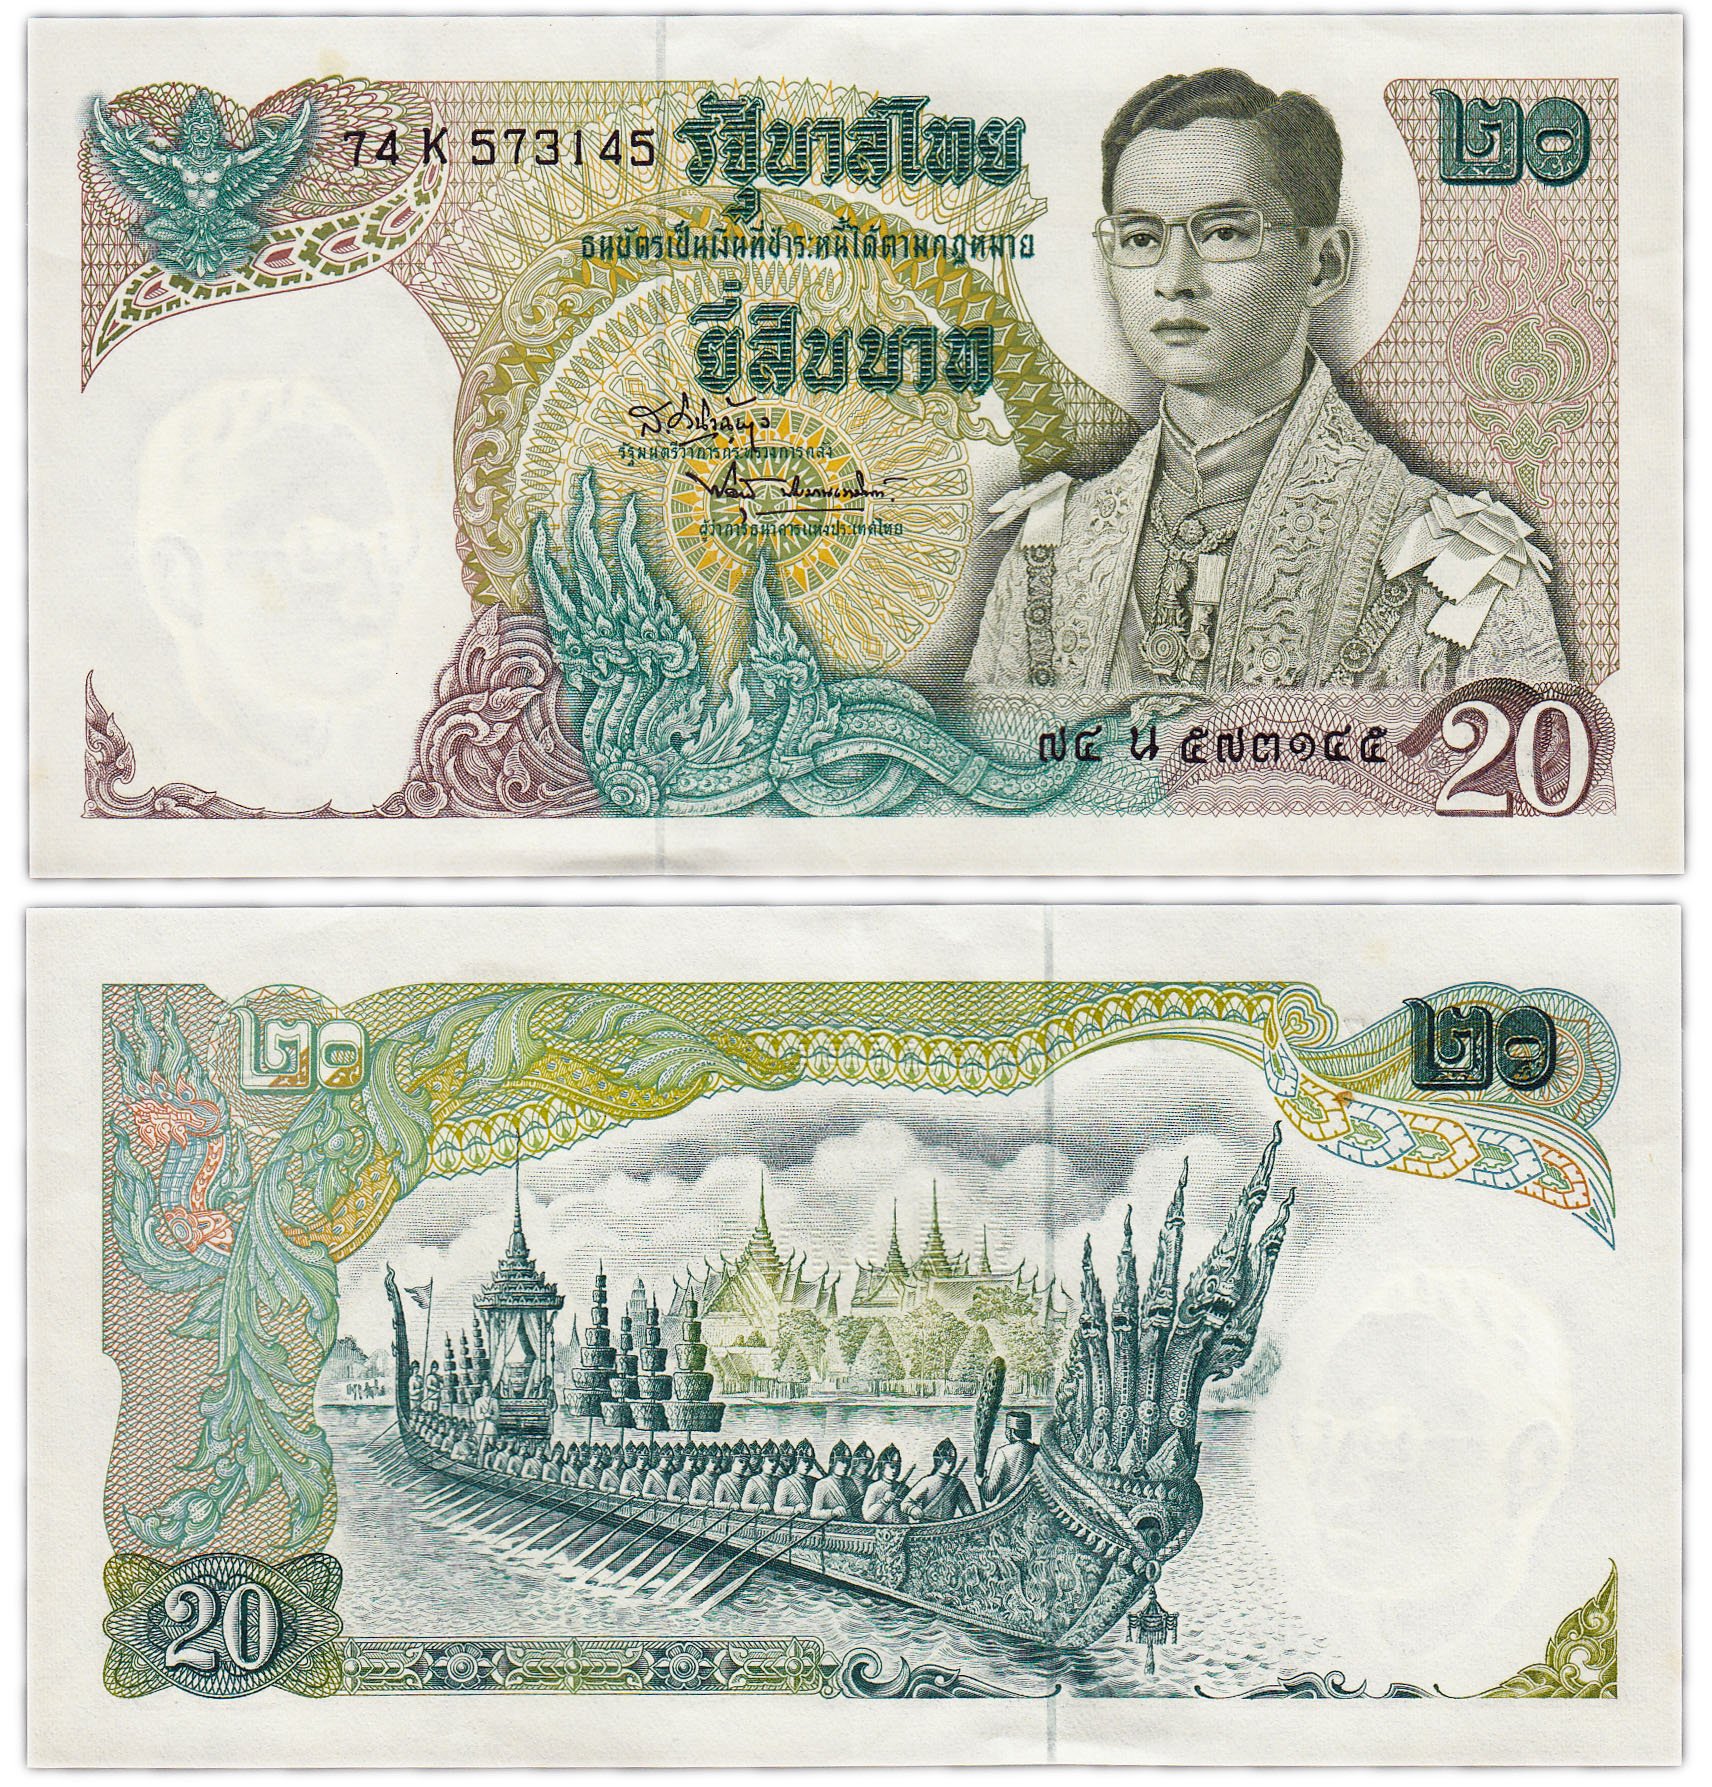 2500 батов в рублях. Таиландский бат купюры. Купюры Таиланда 20 бат. Банкноты Таиланда 500 бат. Купюра 20 тайский бат.